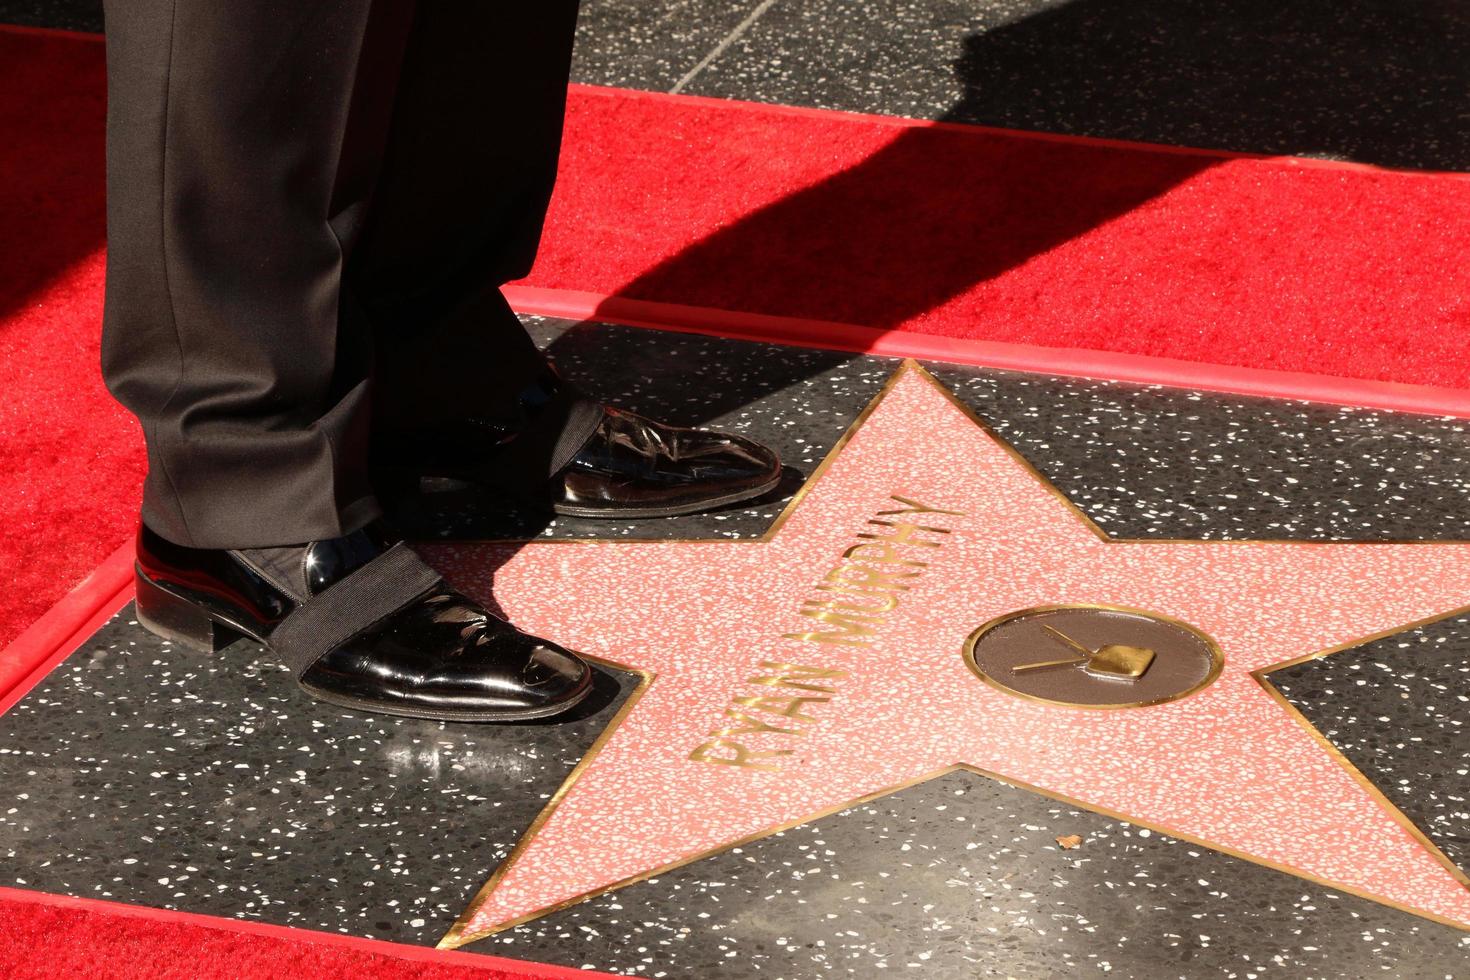 los angeles 4 dicembre - ryan murphy scarpe sulla sua stella wof alla cerimonia della stella ryan murphy sulla hollywood walk of fame il 4 dicembre 2018 a los angeles, ca foto